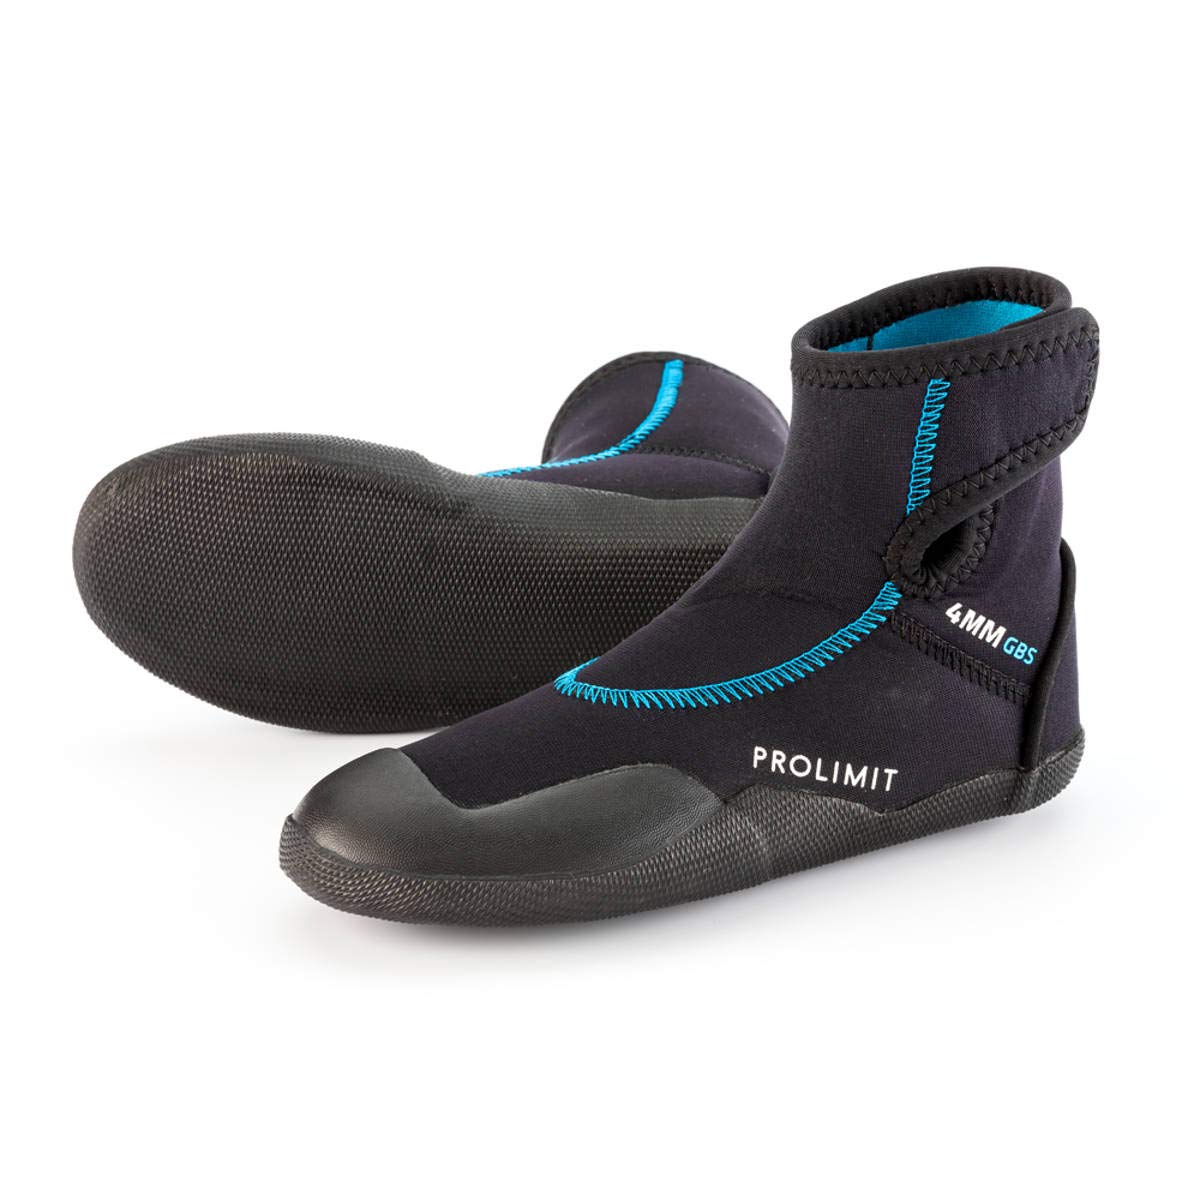 Prolimit Junior Grommet 4mm Neoprene Boots 70900 - Black/Blue Footwear Size - 35/36